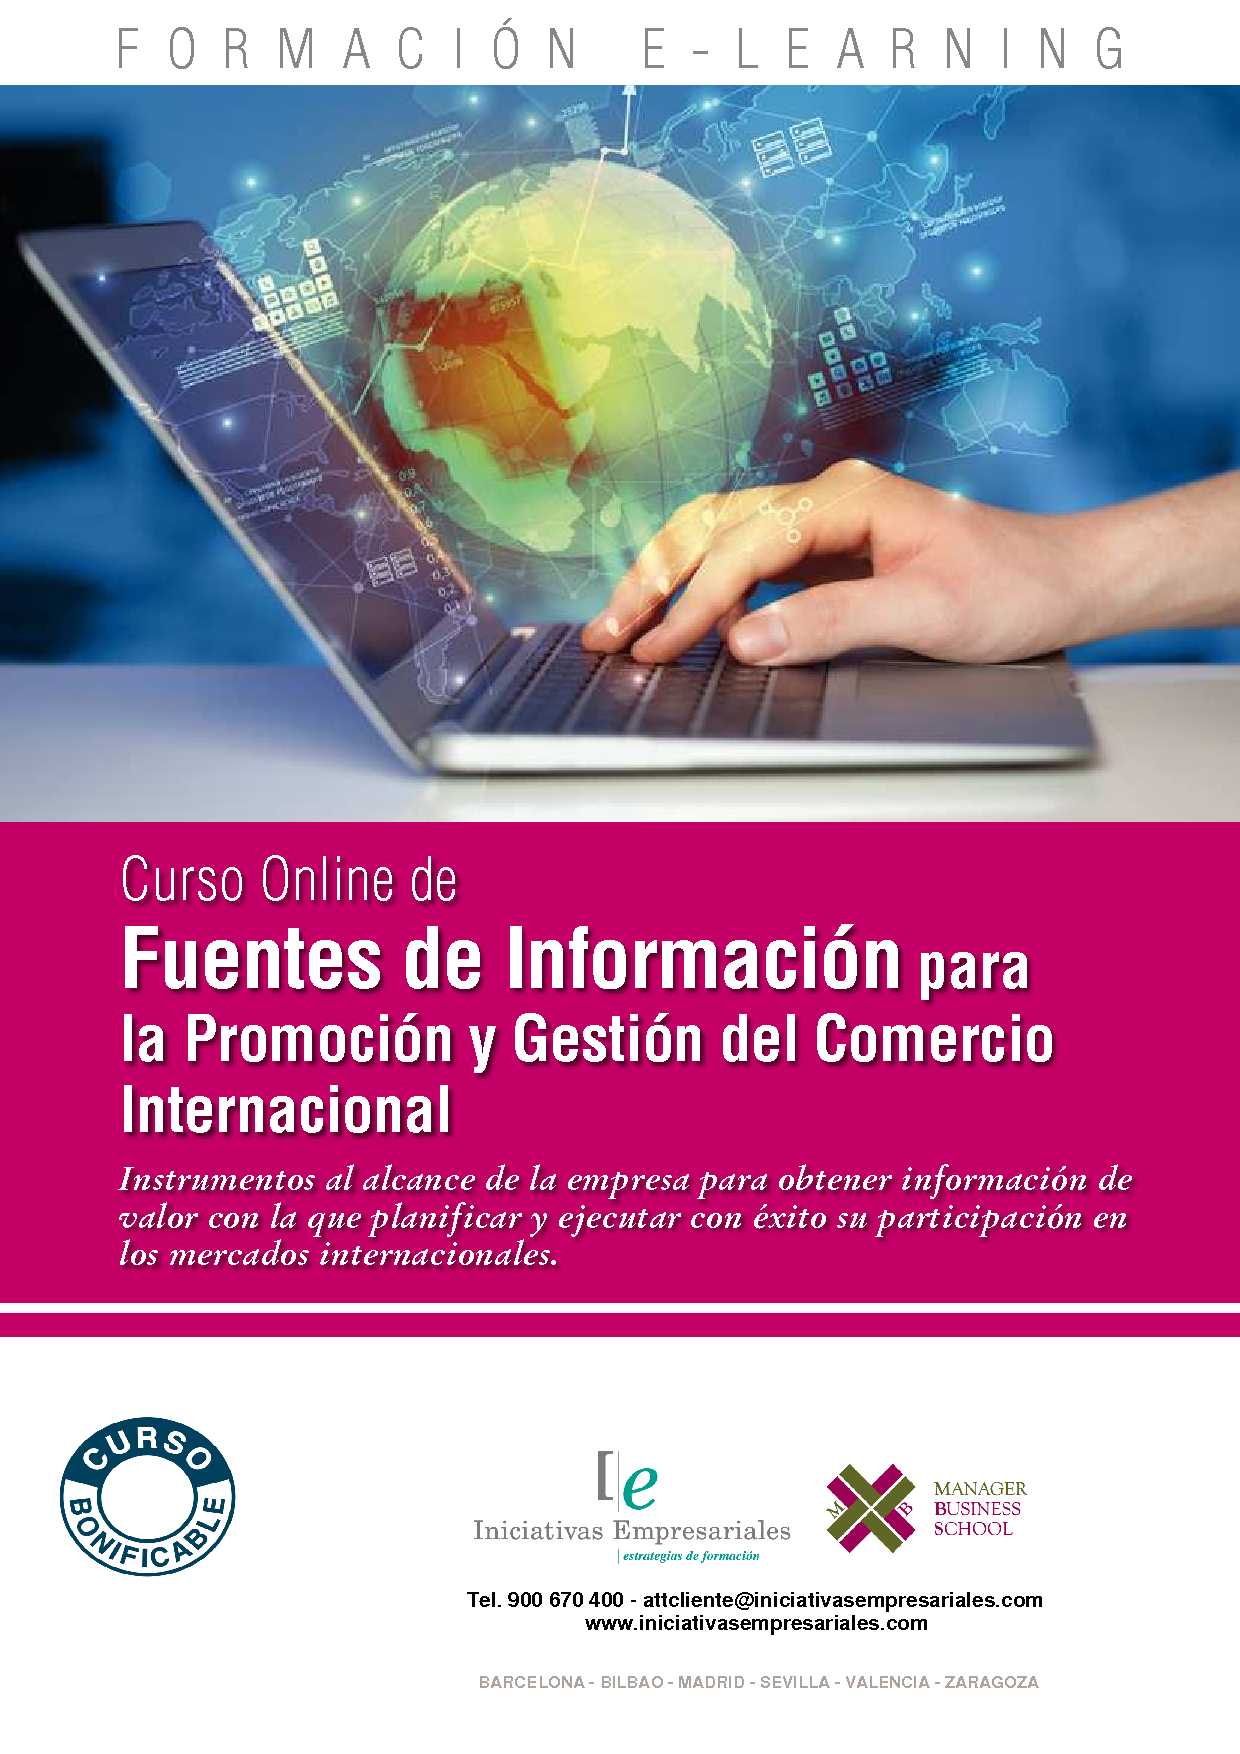 Fuentes de Información para la Promoción y Gestión del Comercio Internacional